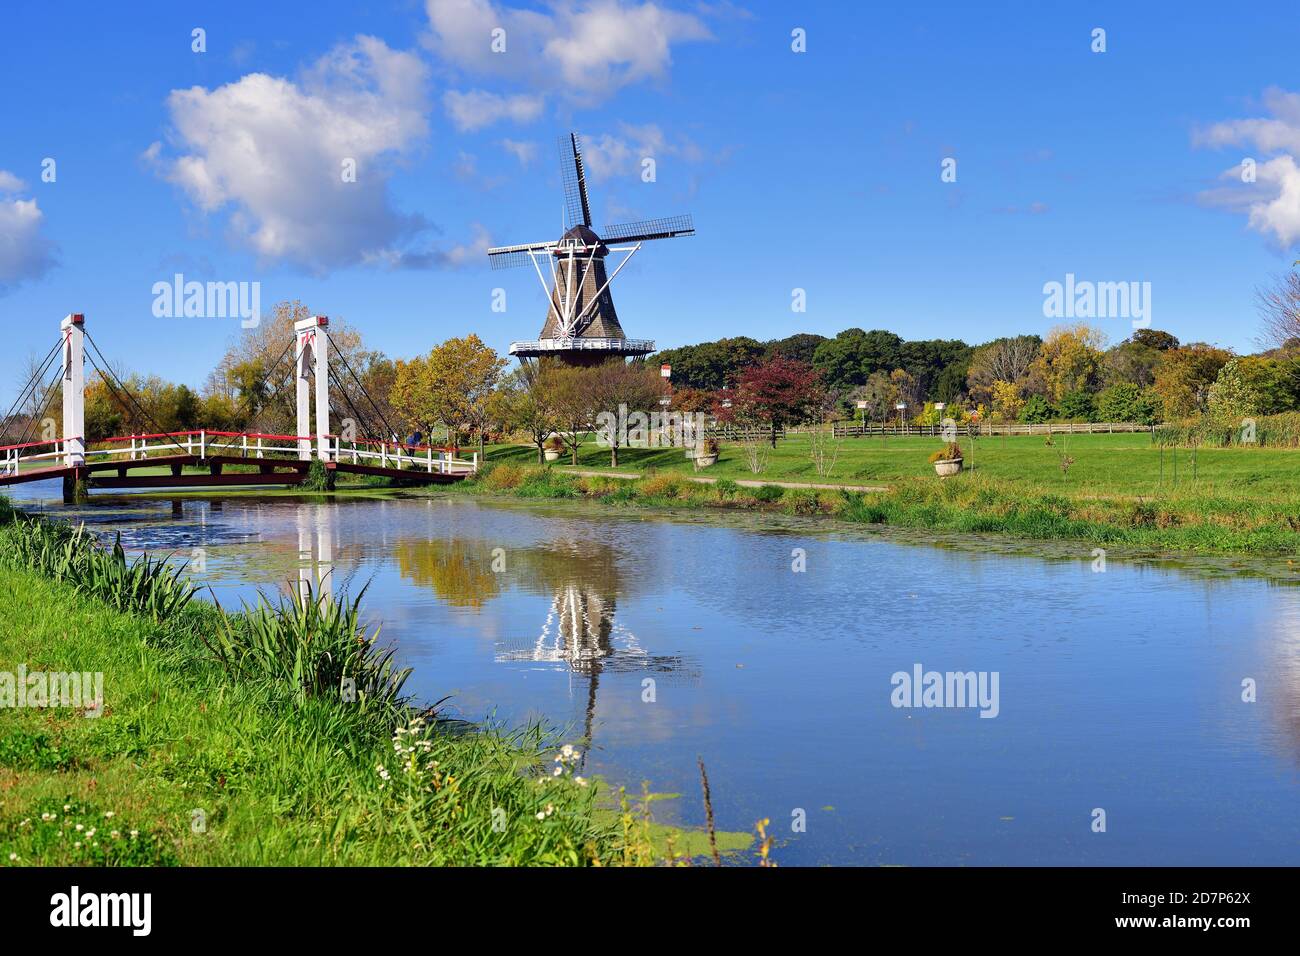 Pays-Bas, Michigan, États-Unis. Windmill Island Gardens, en Hollande, au Michigan, est dédié au patrimoine et à la culture néerlandais. Banque D'Images